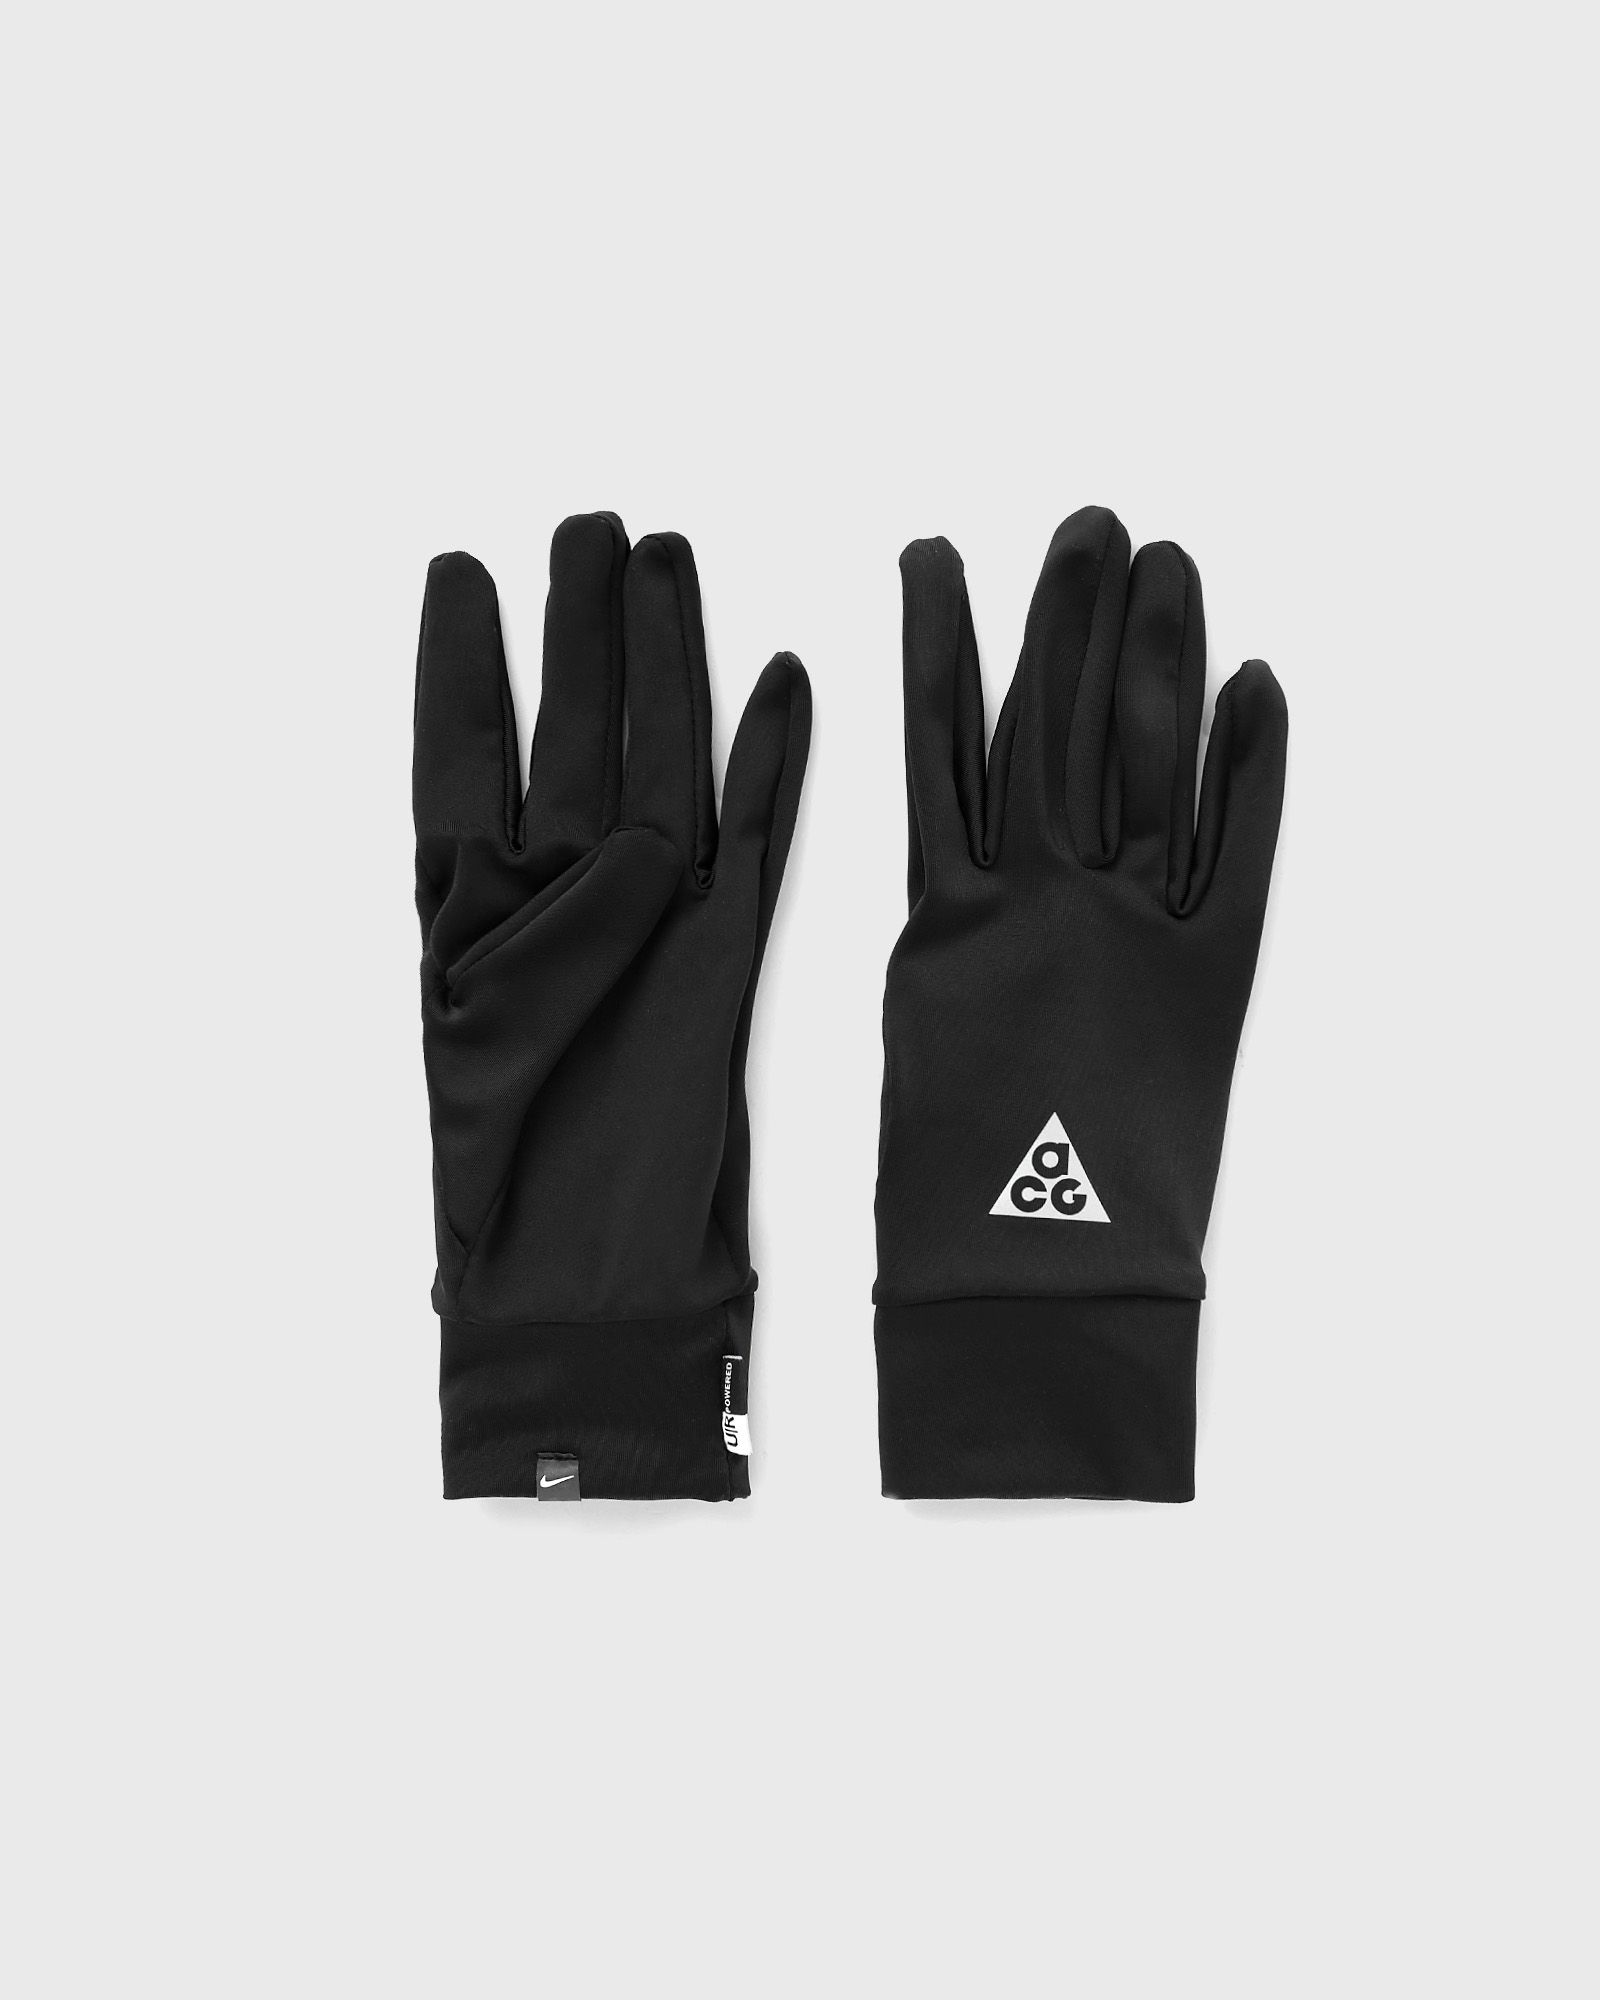 Nike - acg df lw glove men gloves black in größe:m